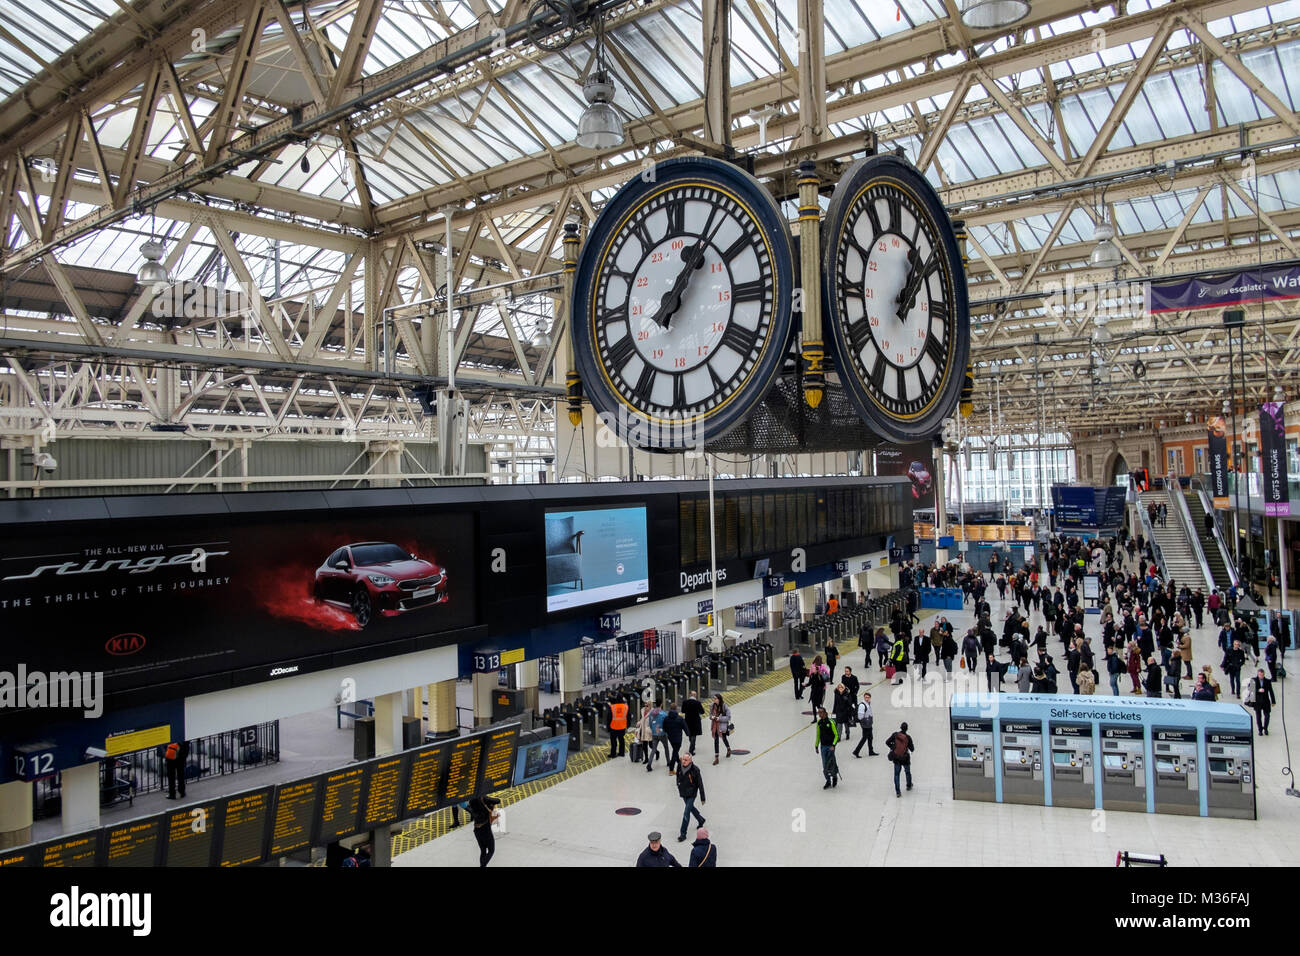 Bahnhof Uhr über die bahnhofshalle von Waterloo Station, London, UK Stockfoto